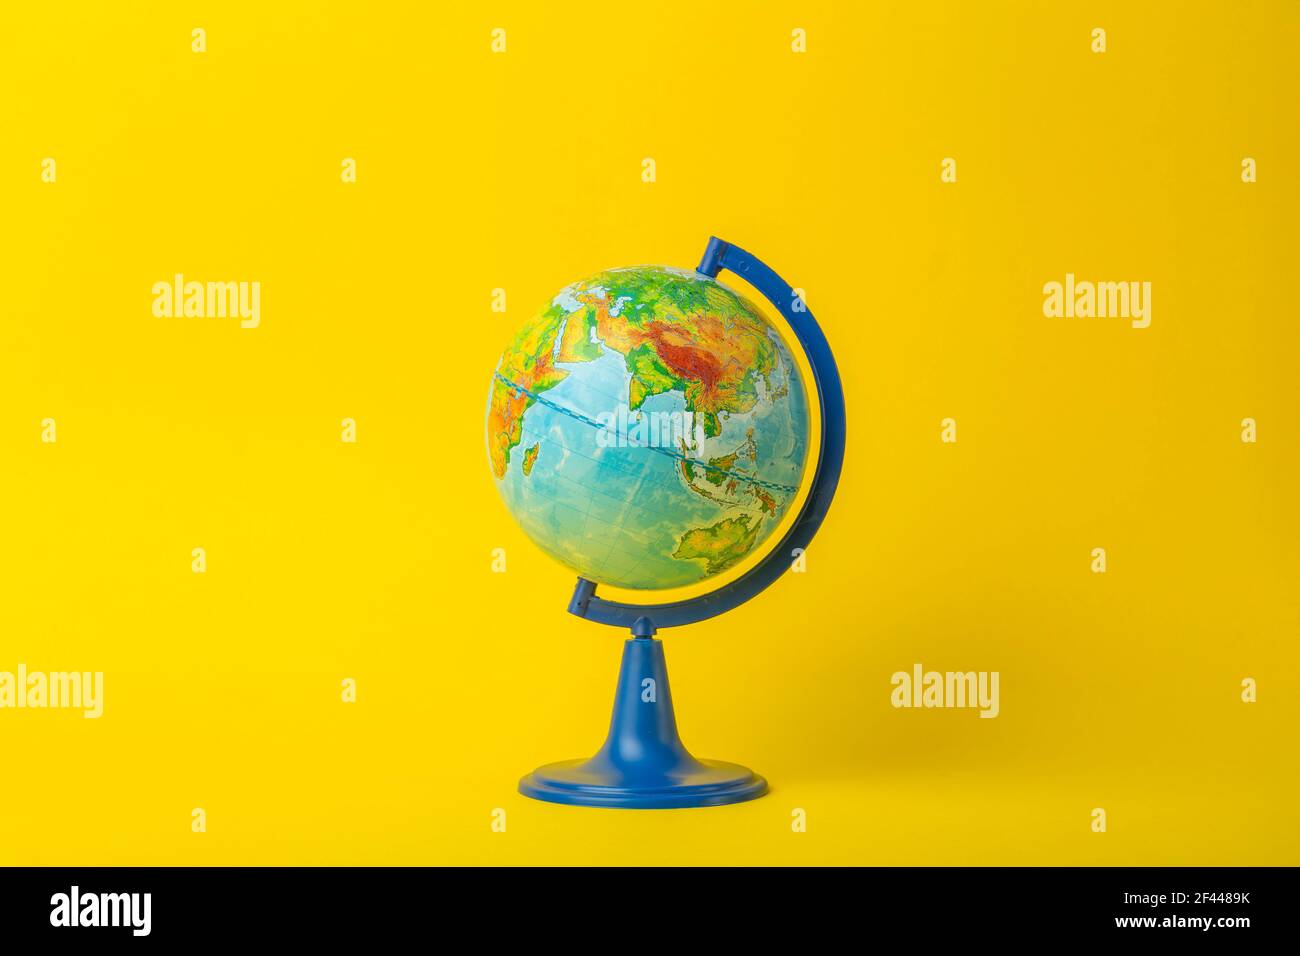 Globe terrestre sur fond jaune propre. Éducation, école, étude et connaissance de fond concept. Photo de haute qualité Banque D'Images